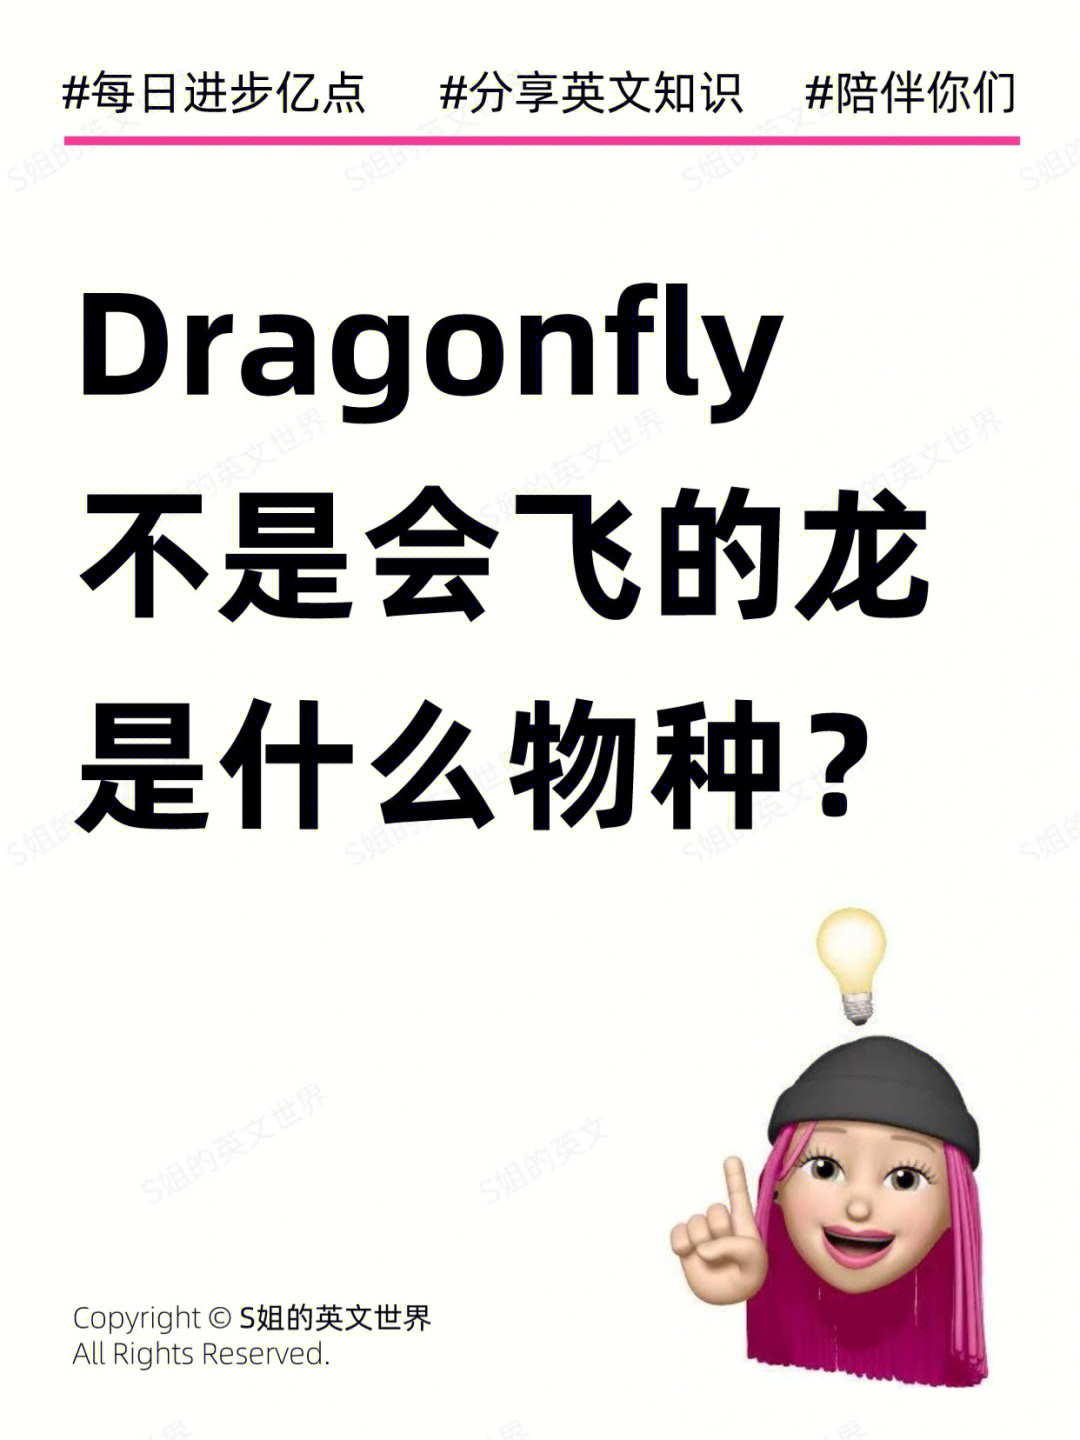 今天给大家分享一个经常会看到但很多人不一定知道怎么说的词dragon=